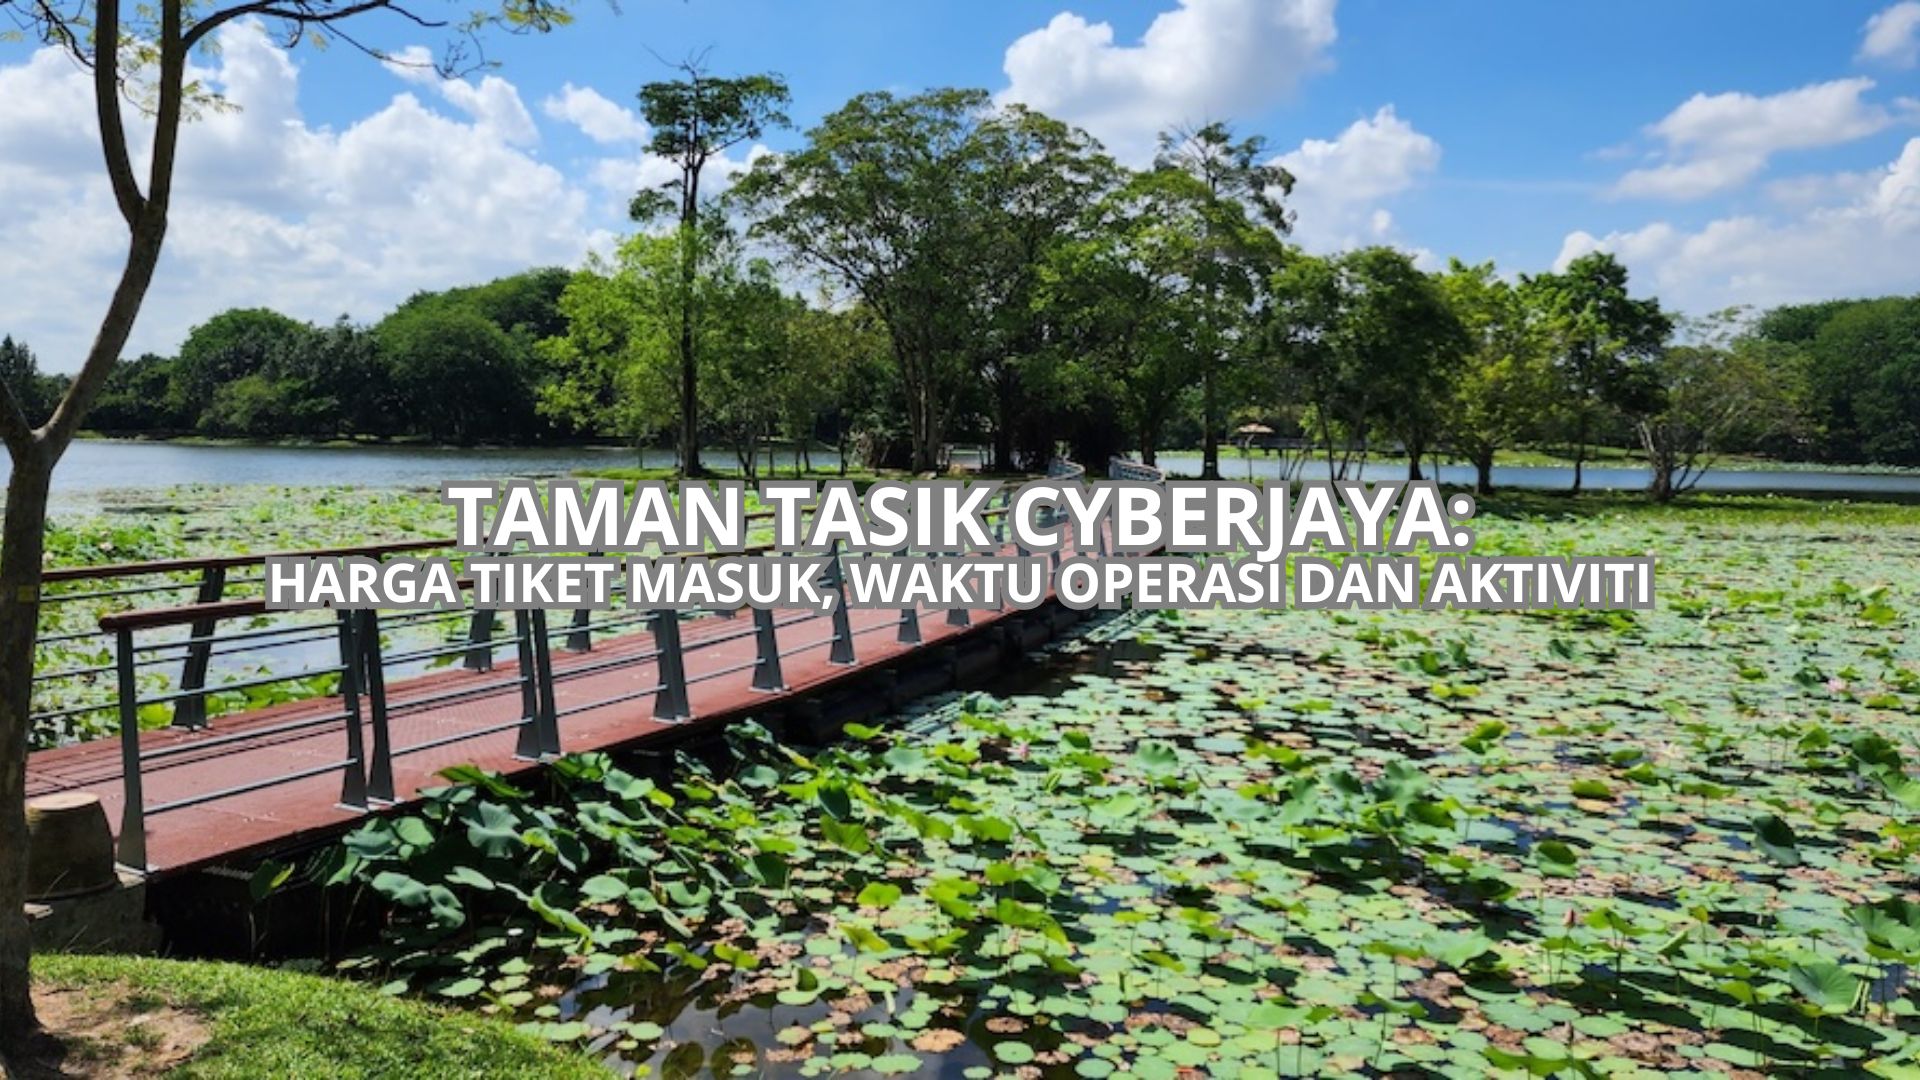 Taman Tasik Cyberjaya Cover